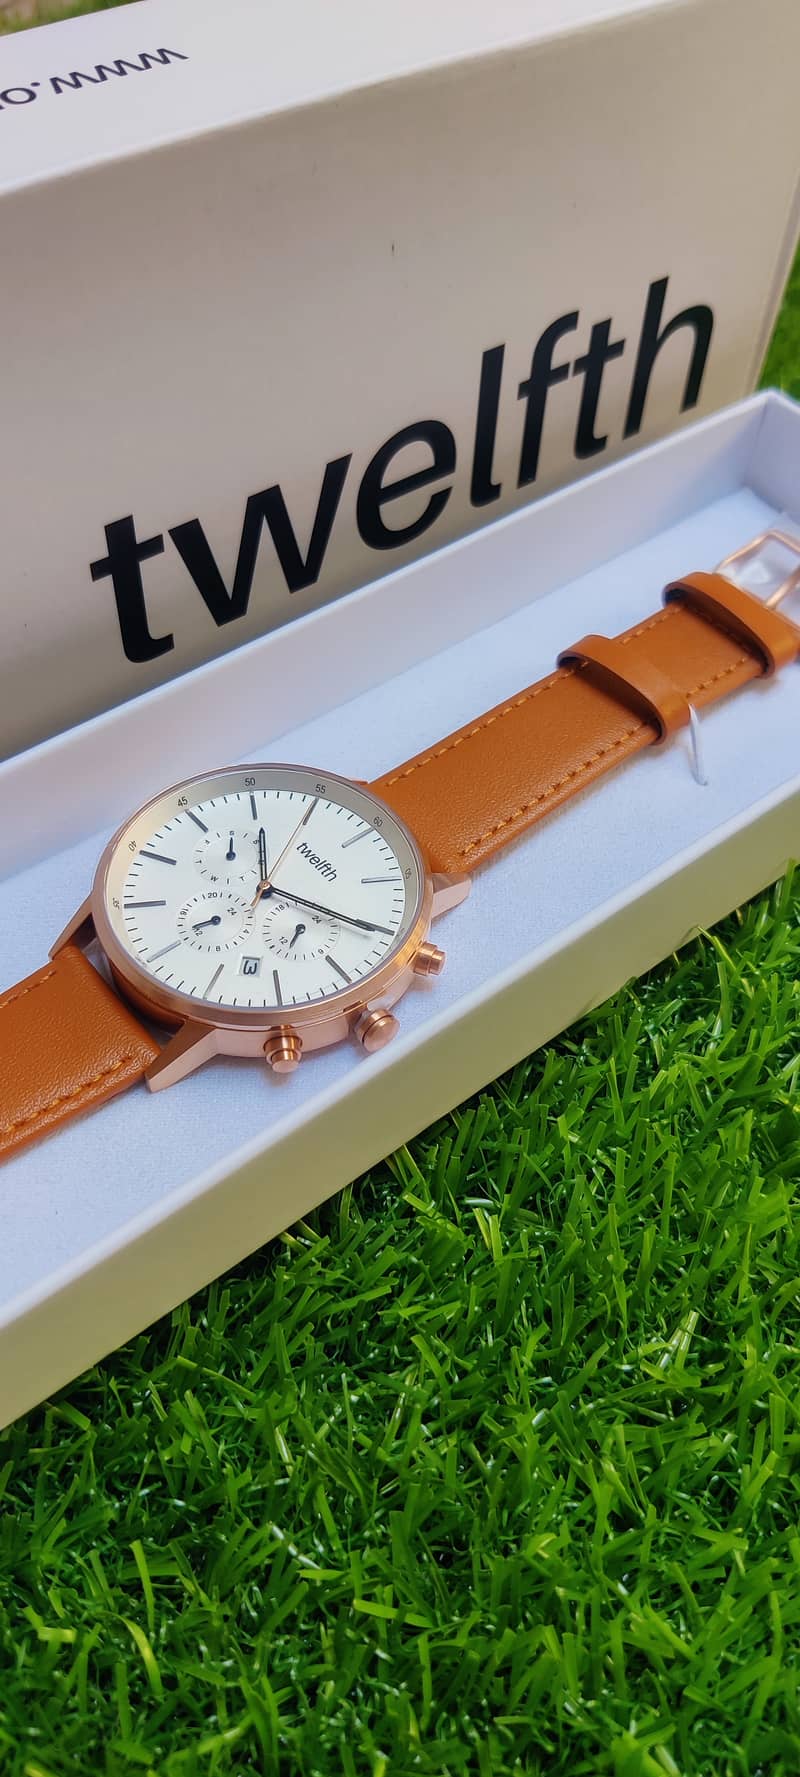 Watches for men/wowen/Twelfth wrist watches 2